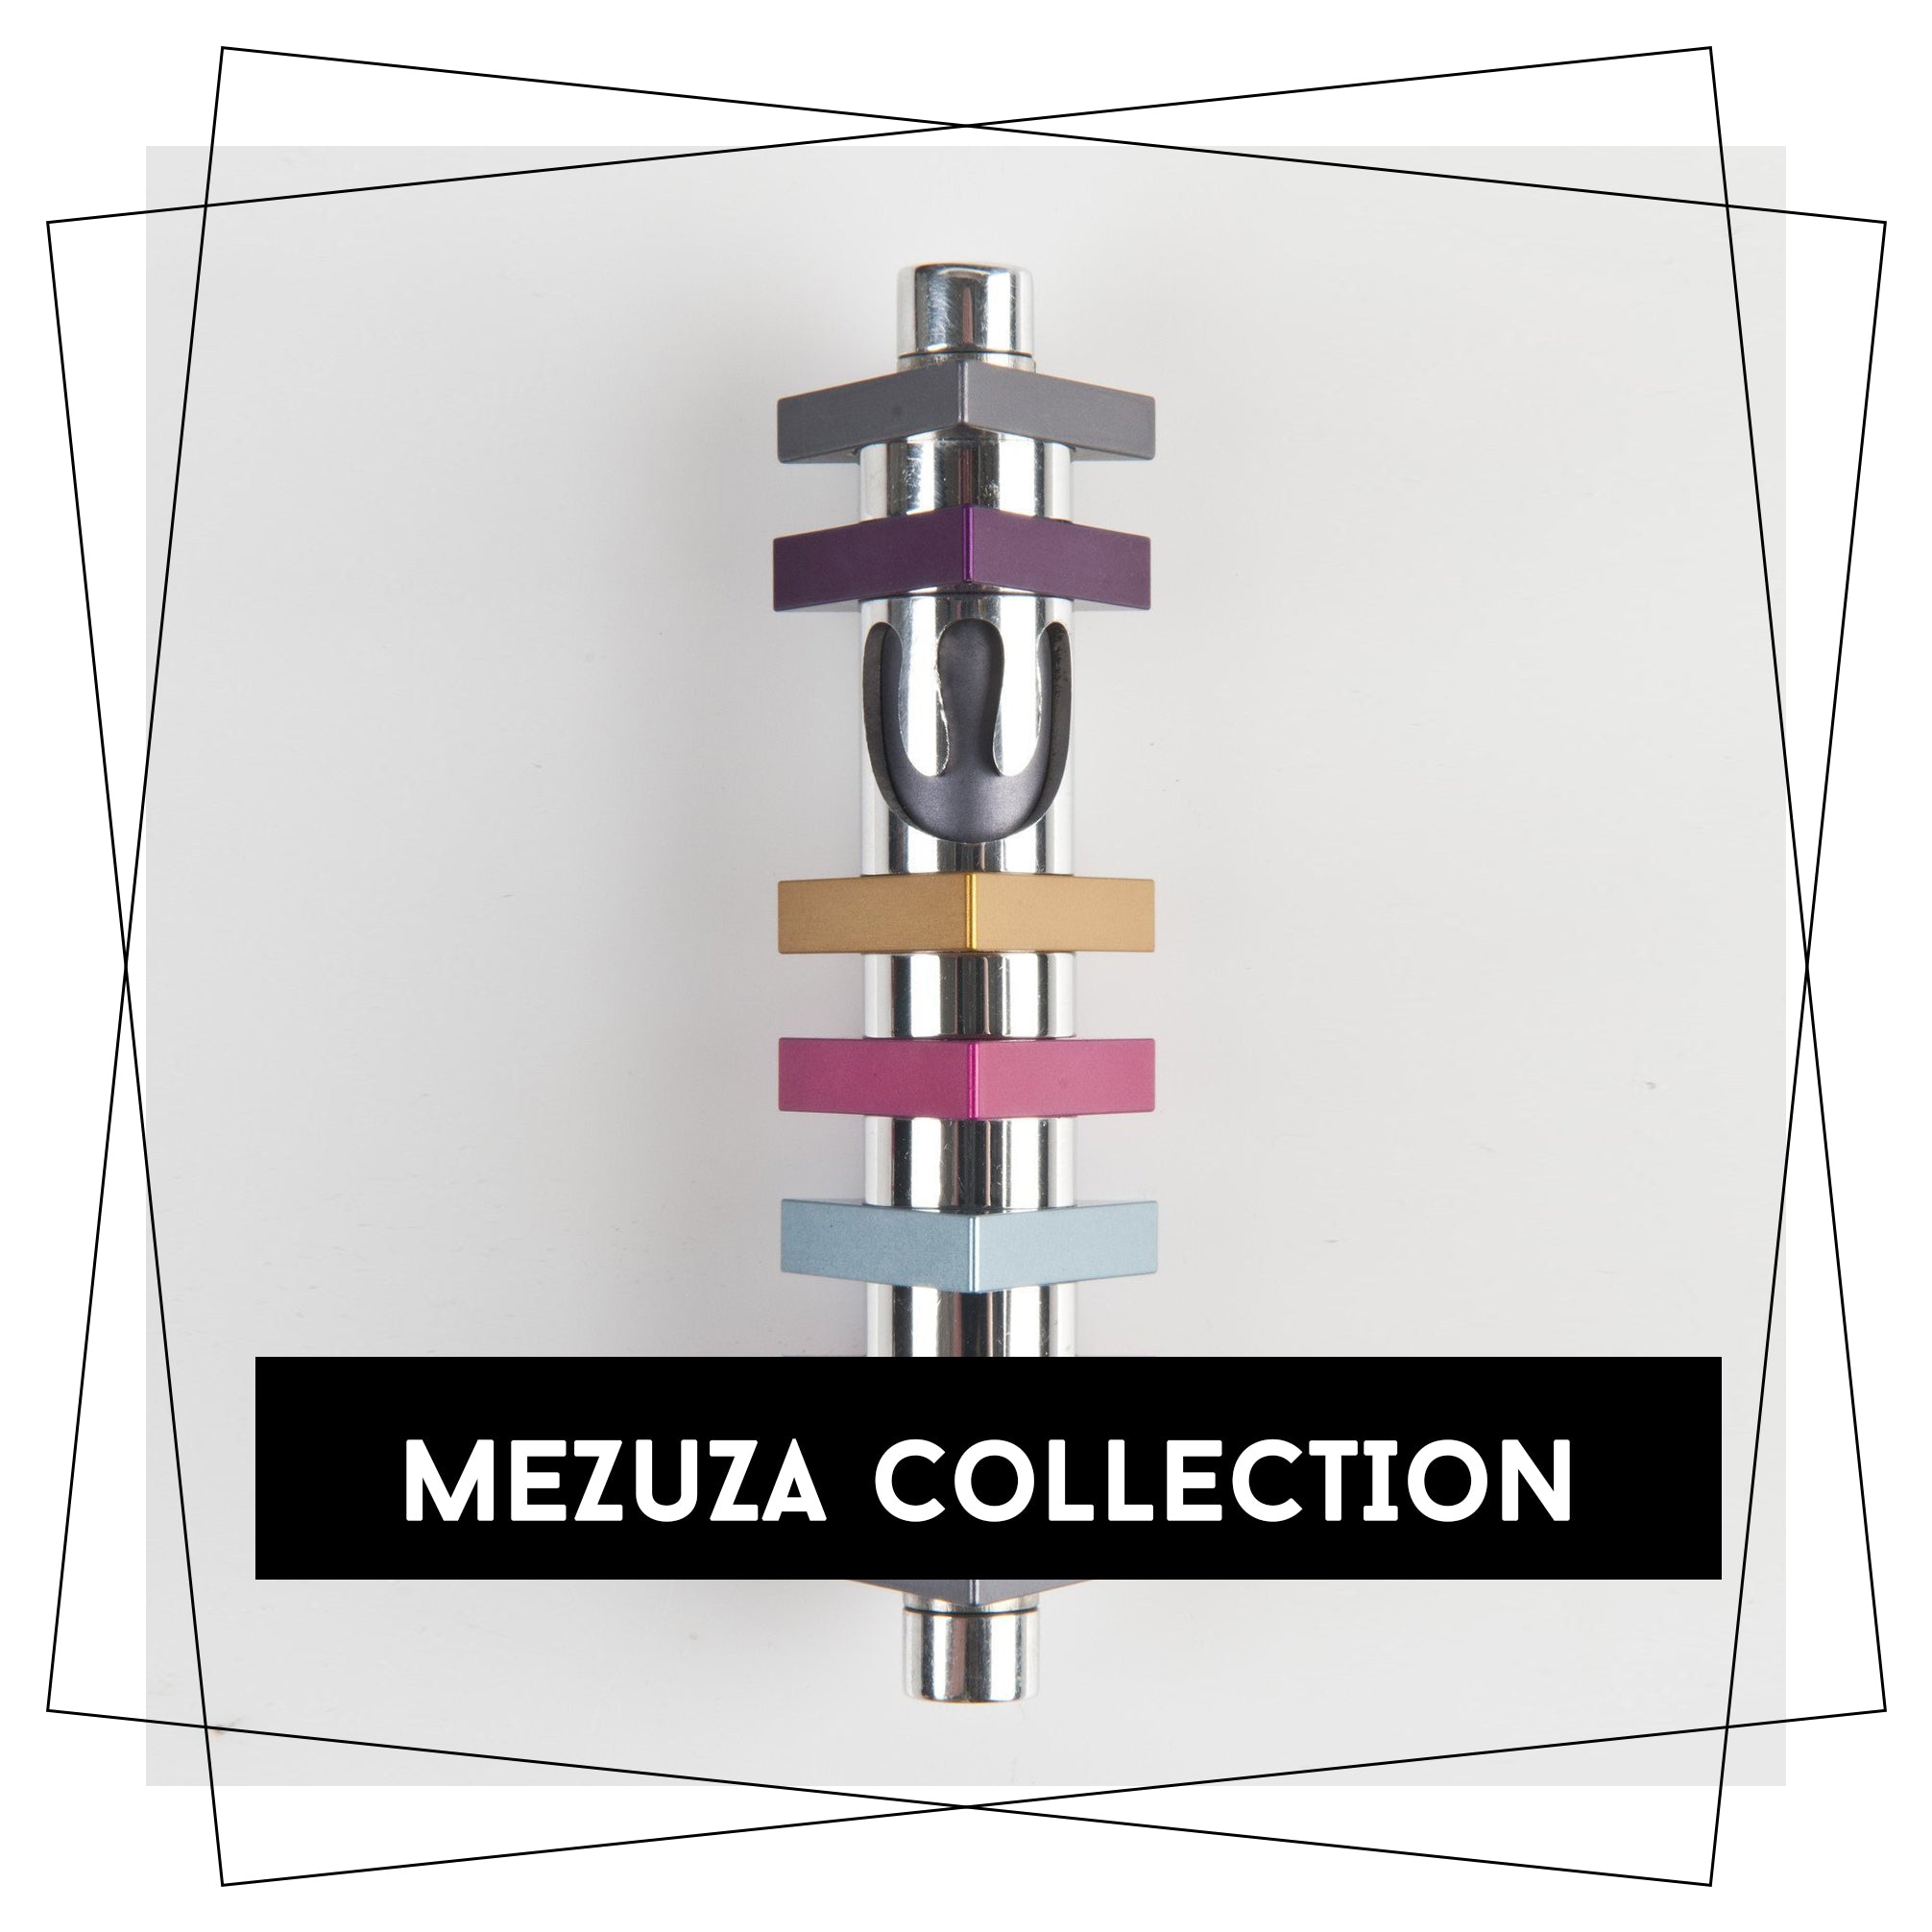 Mezuzah Collection